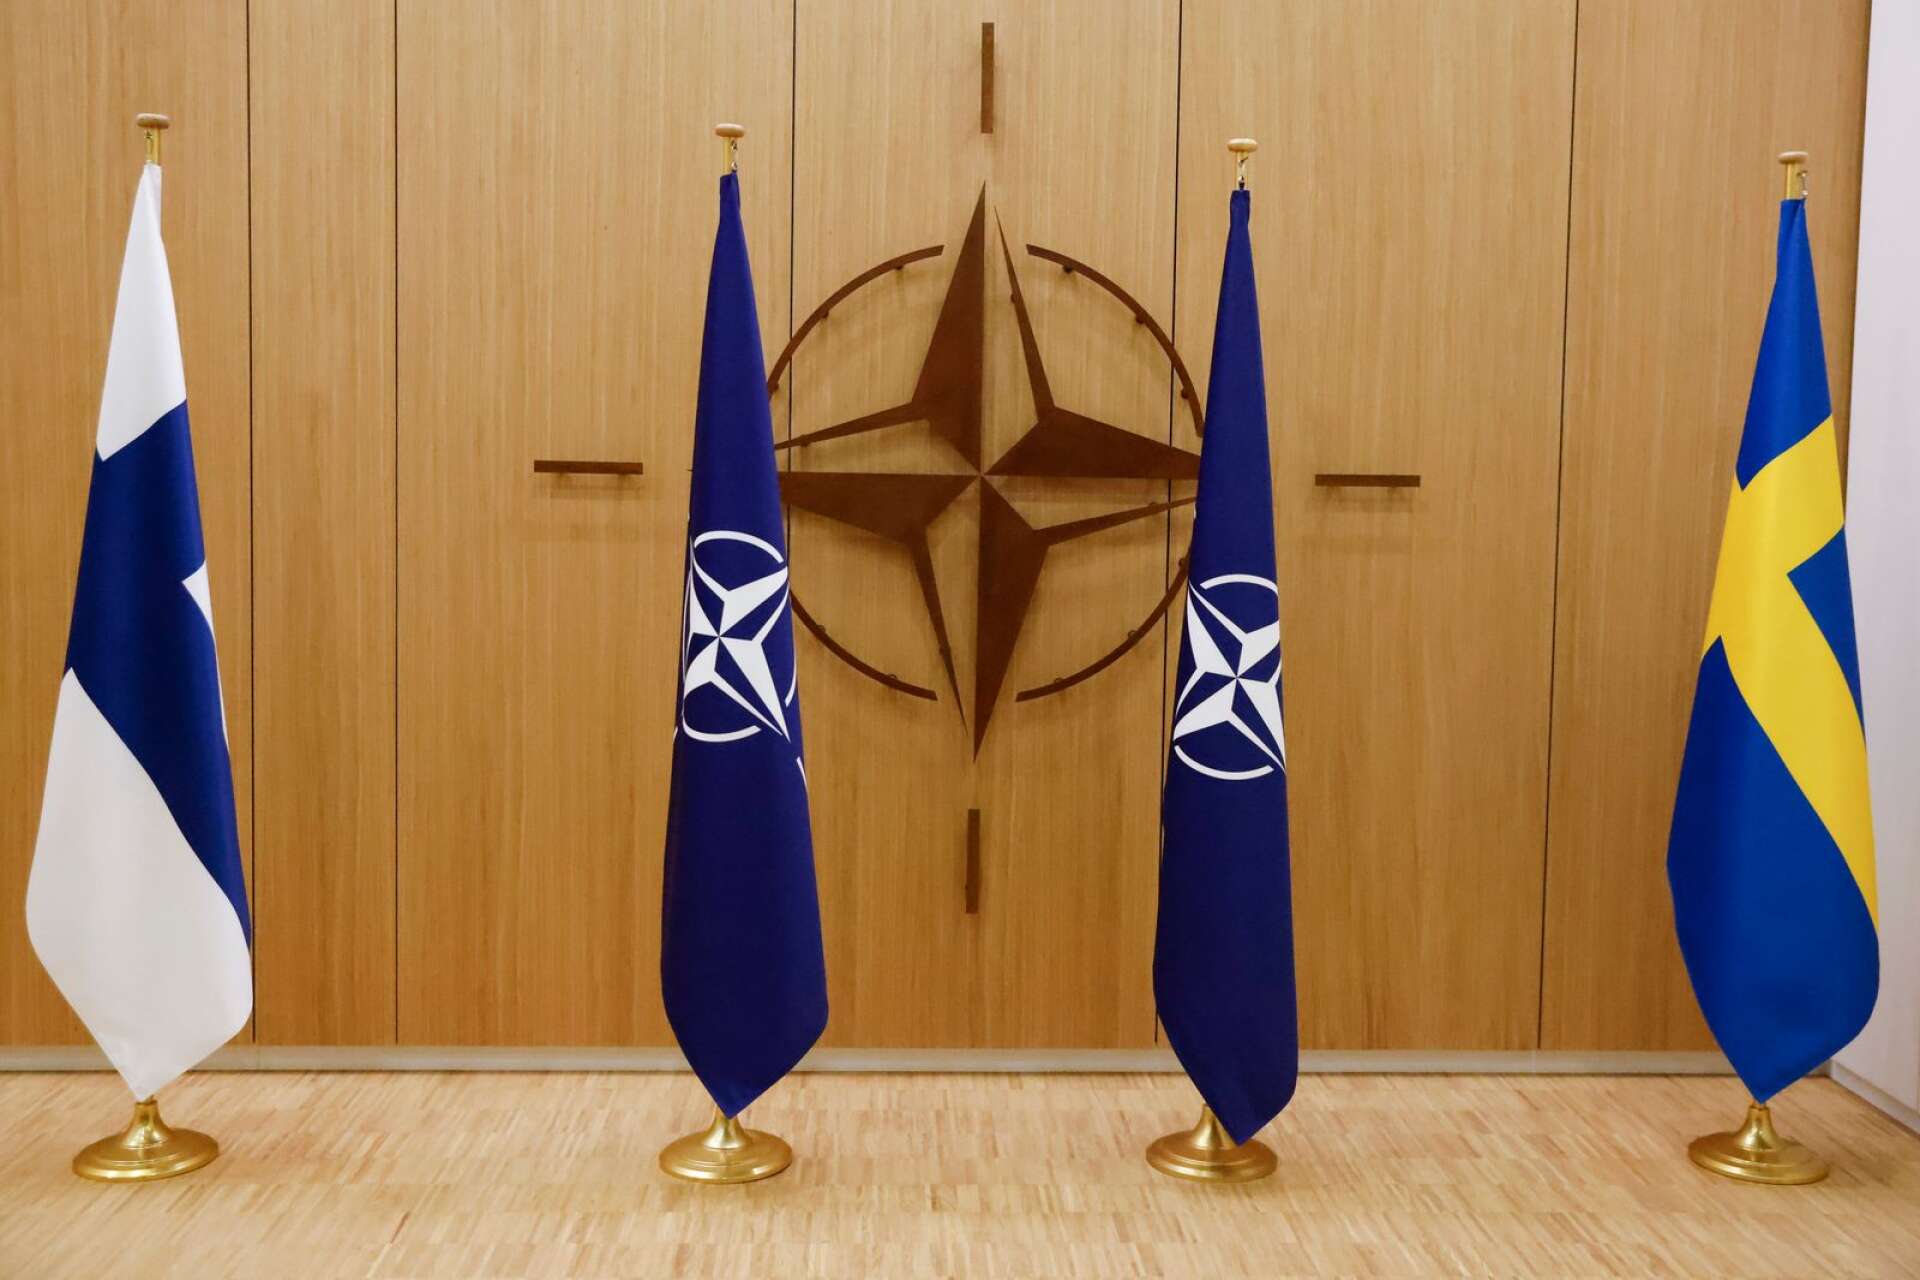 Finland ser ut att godkännas av Nato före Sverige, men försvarsministern Pål Jonson är hoppfull för att Sverige ska kunna bli medlemmar till Natos toppmöte i Vilnius i juli i år.